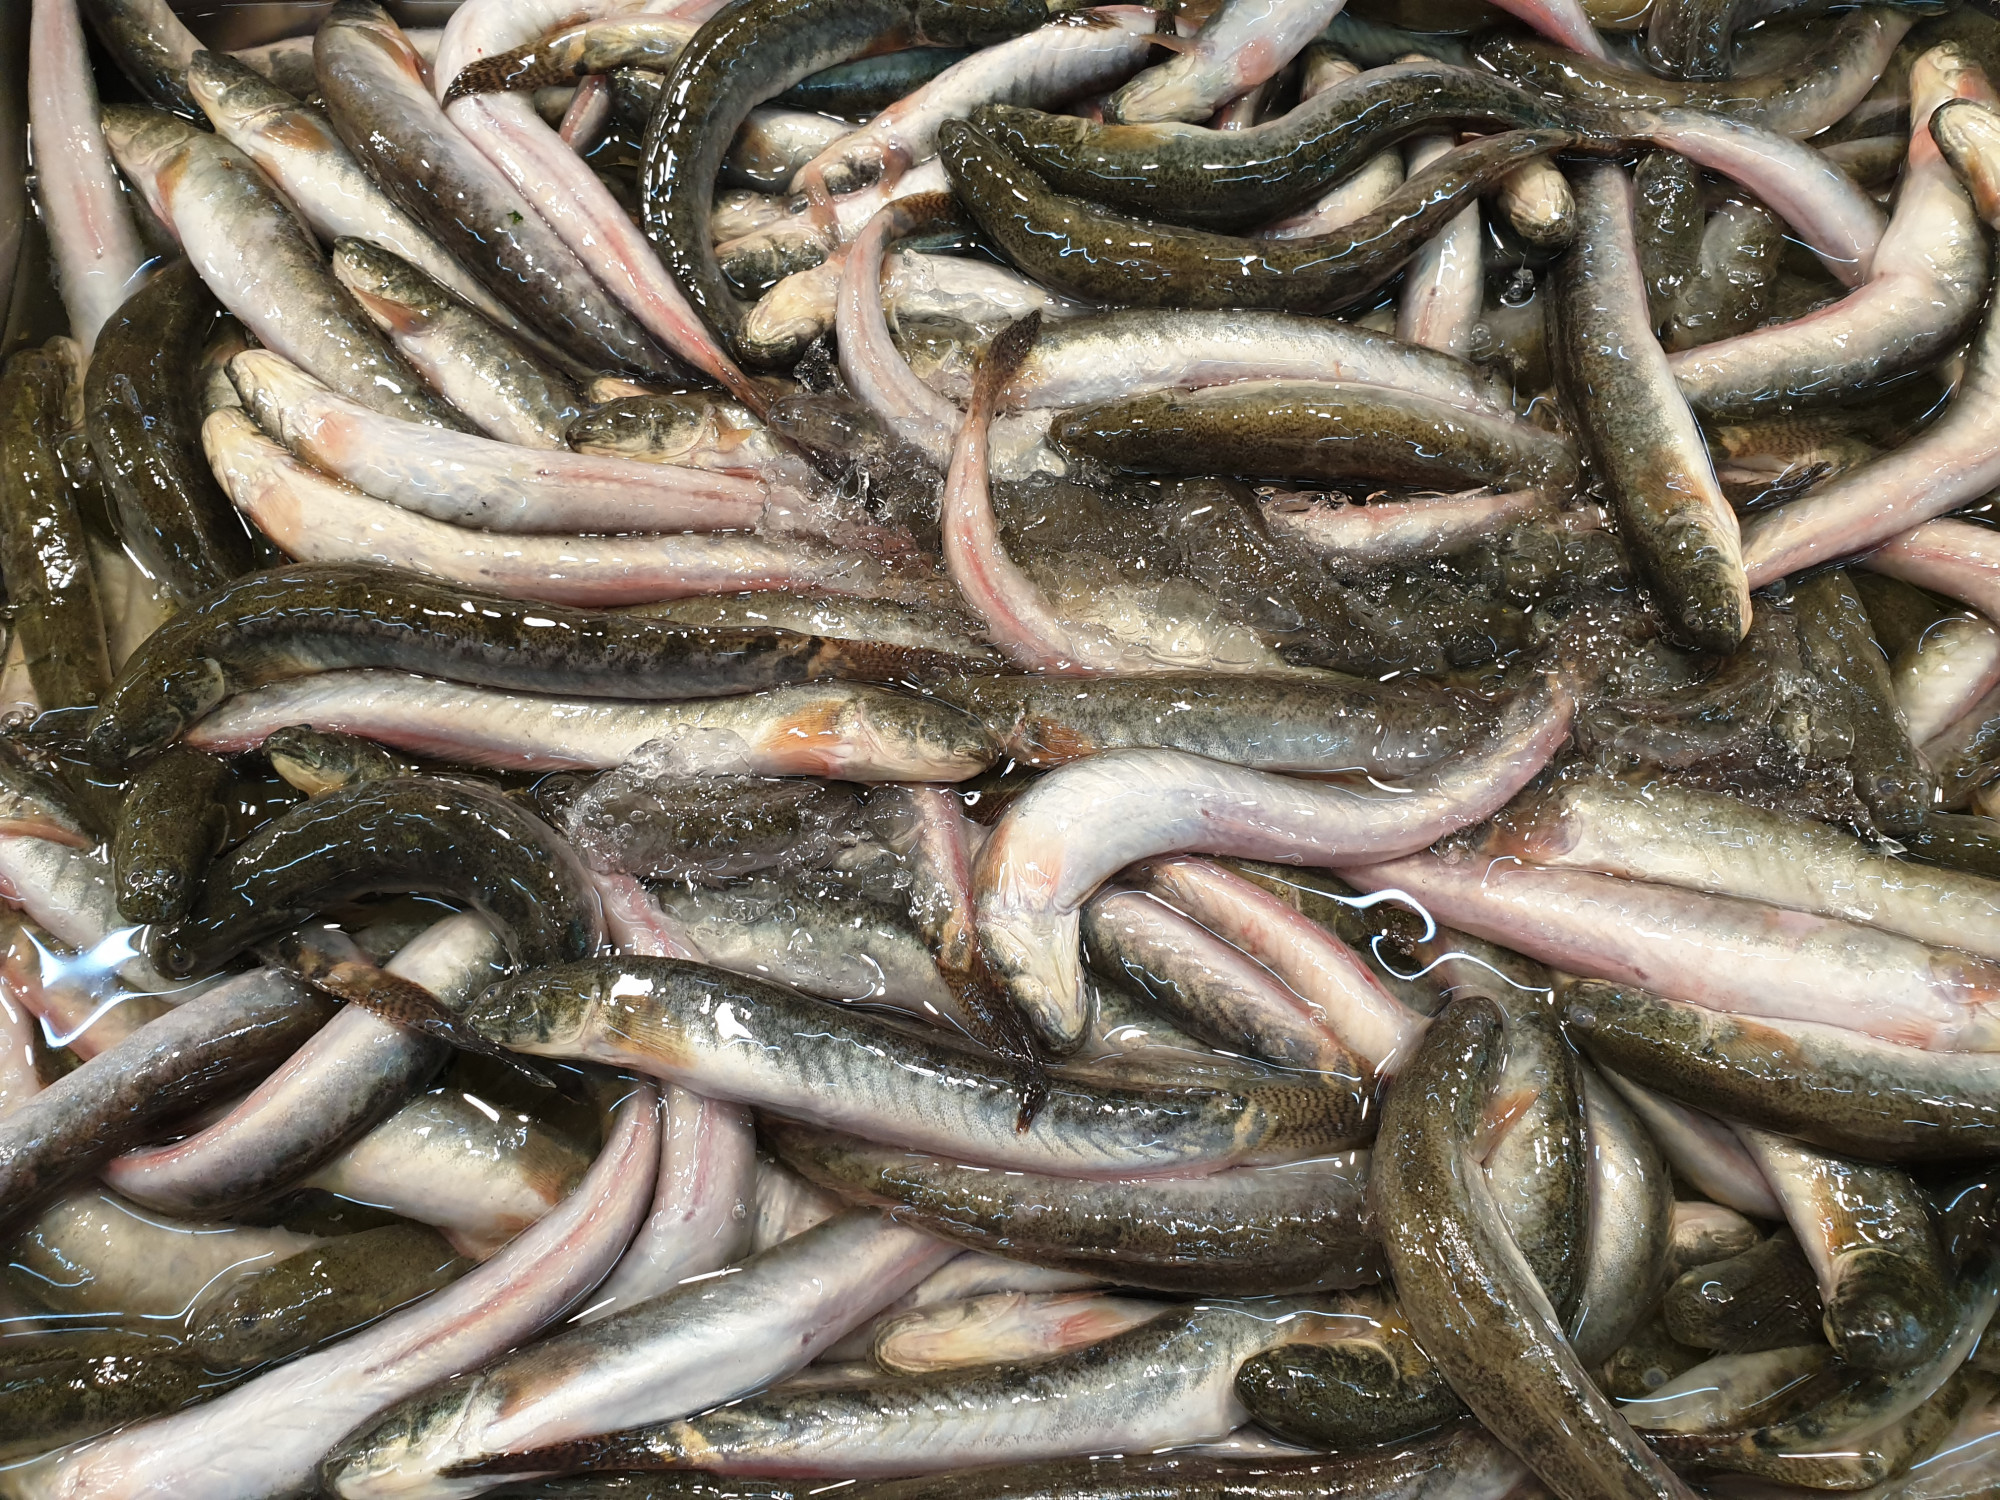 Giá cá kèo bán lẻ tại nhiều chợ hiện cao gấp đôi cá tầm và ngang ngửa với giá cá hồi nhập khẩu - Ảnh minh họa